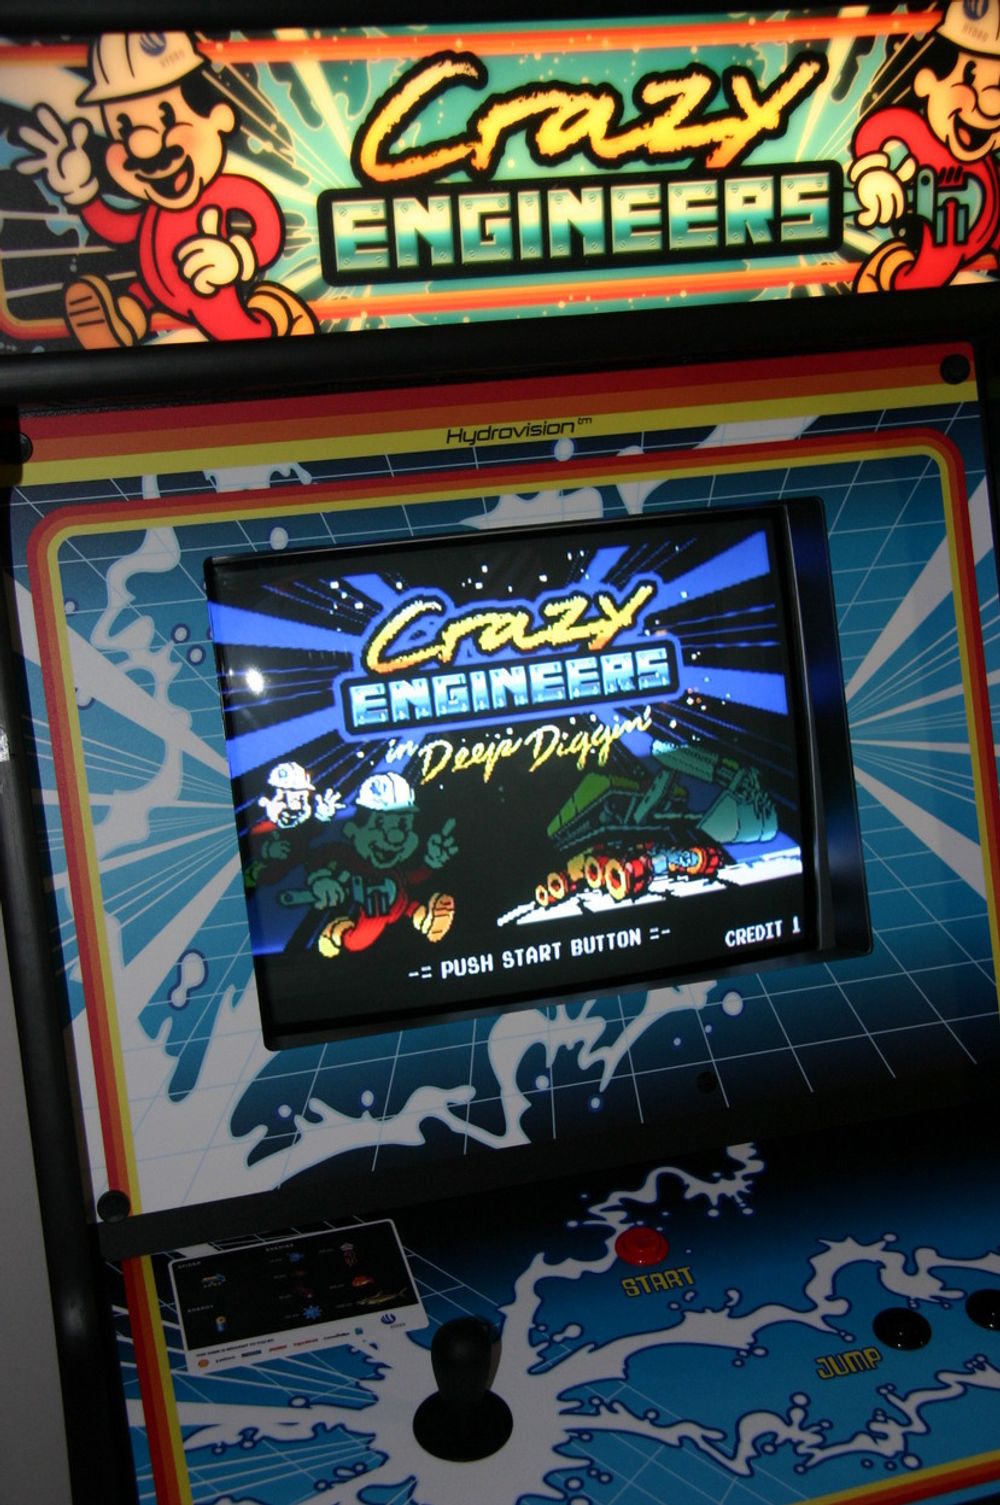 RETRO: Back to basics med «Crazy Engineers», på en spilleautomat av den gode gamle sorten.